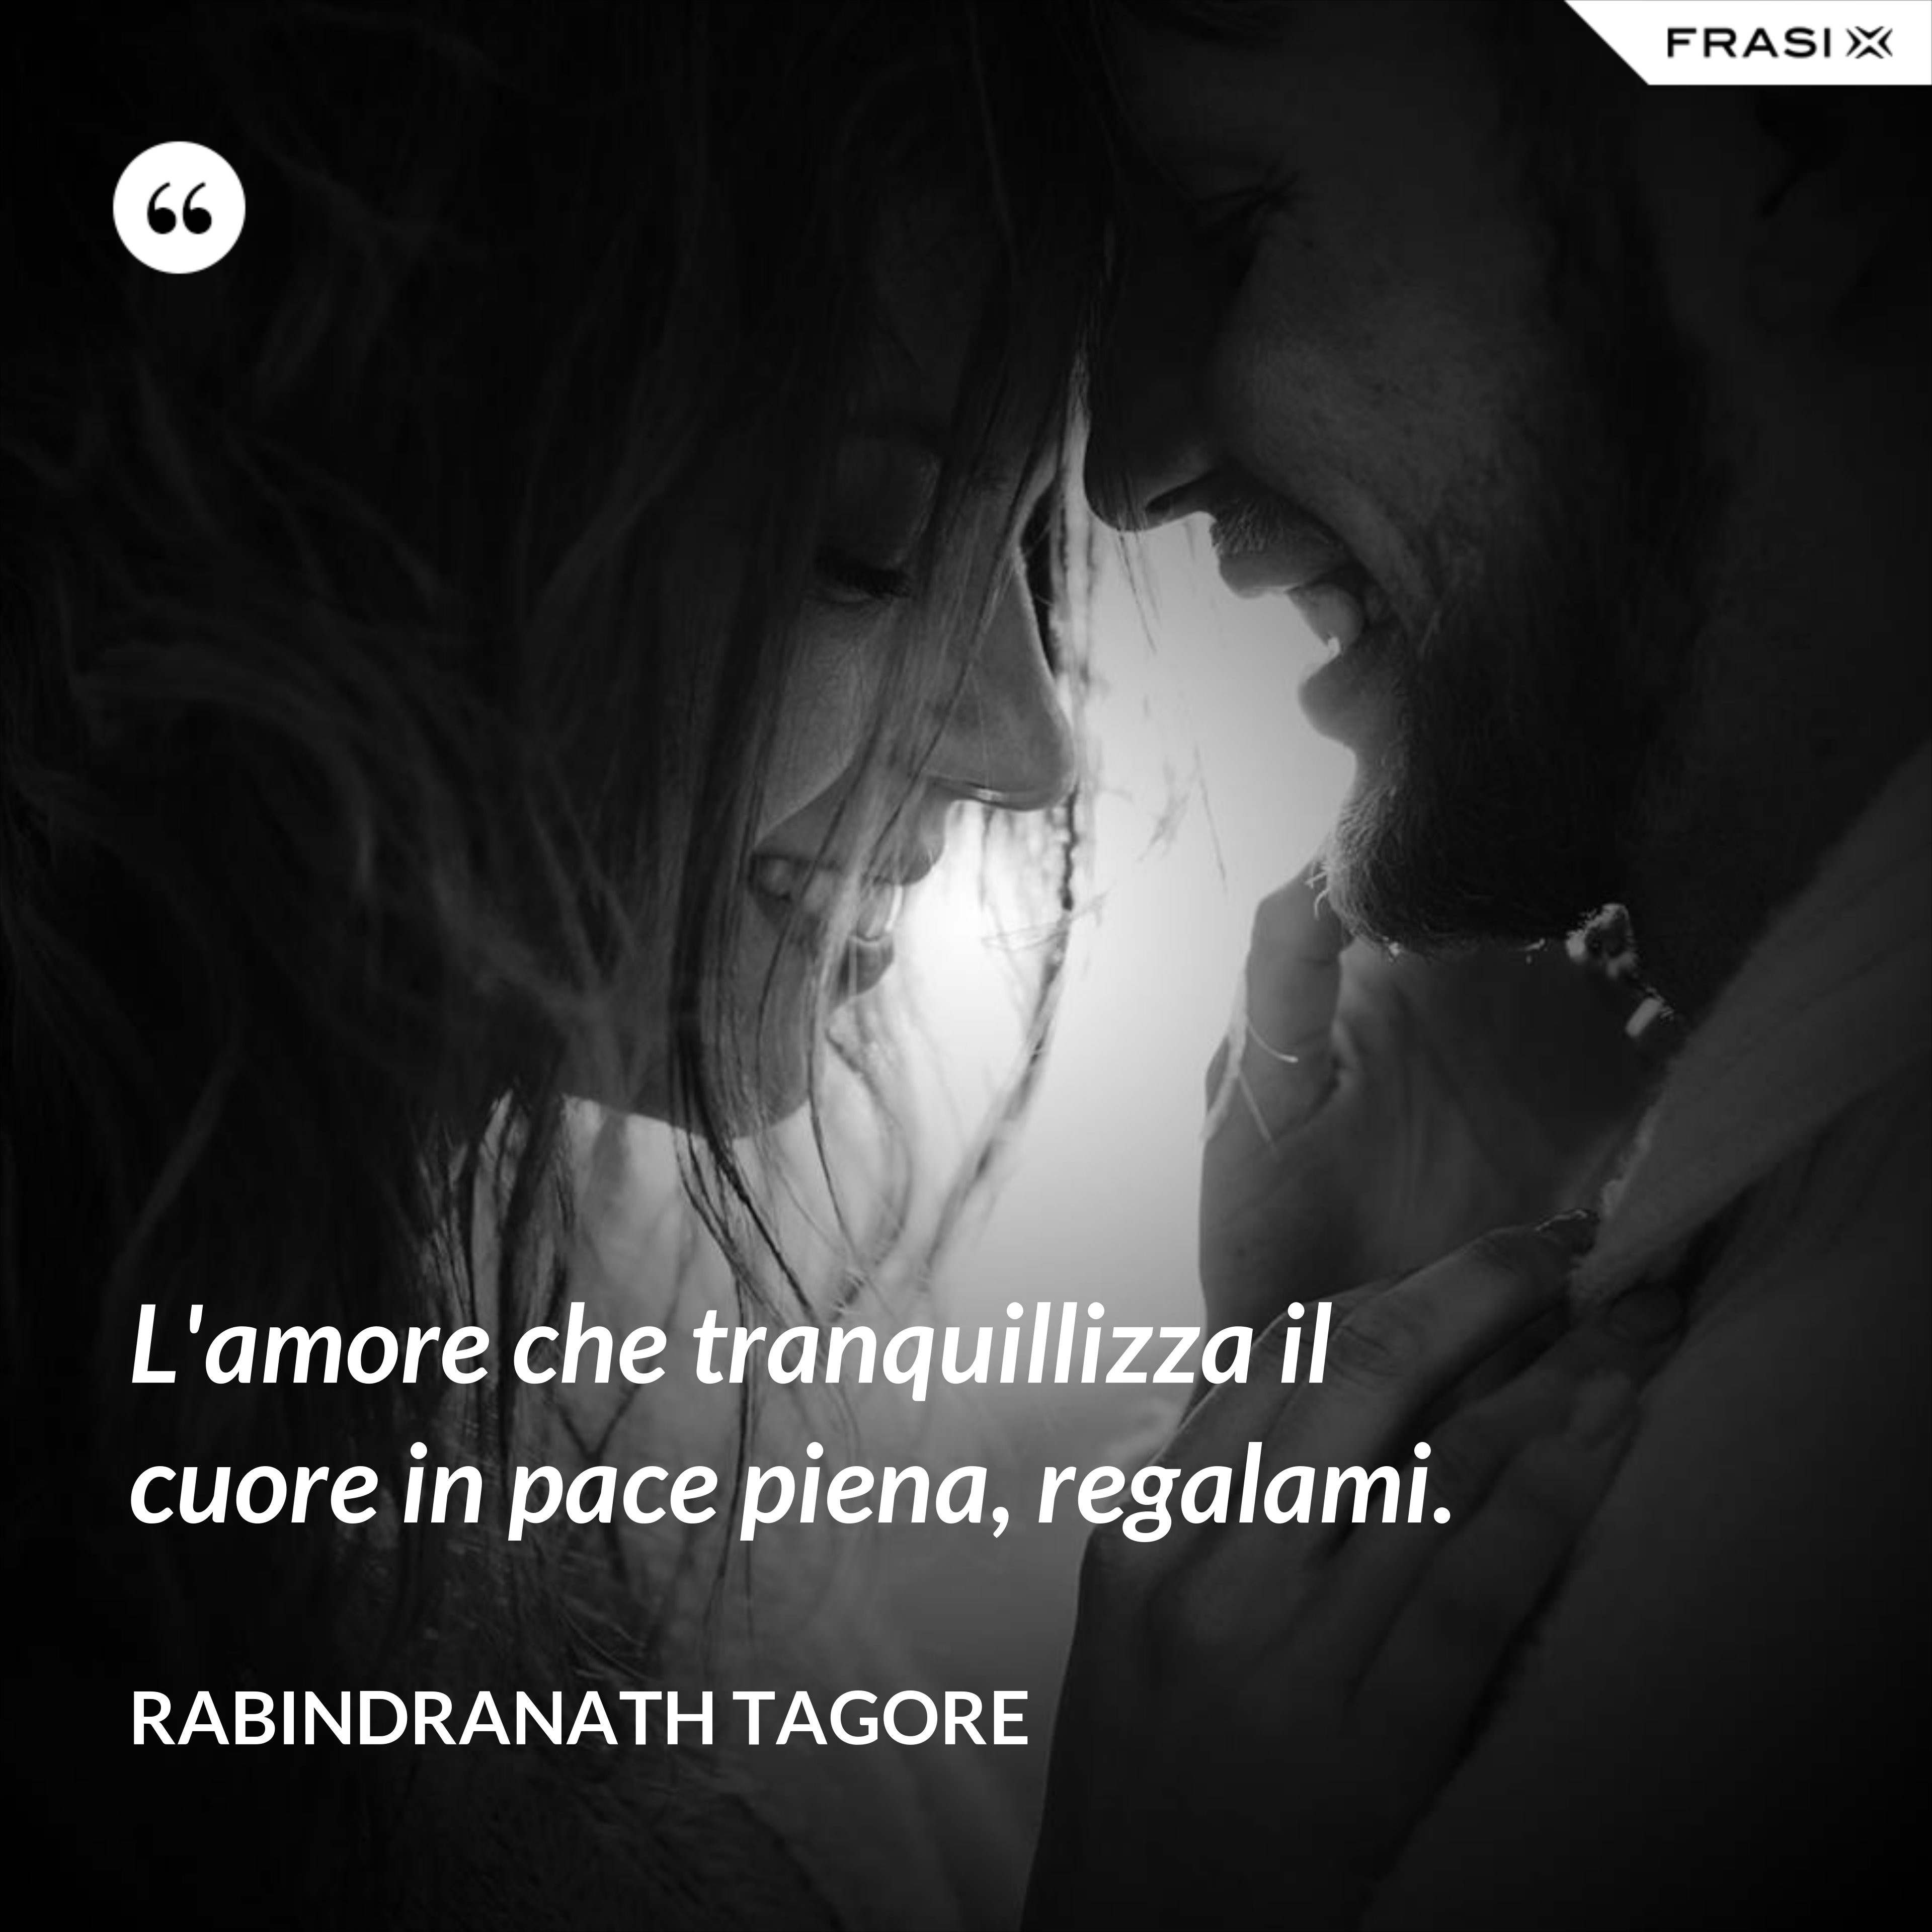 L'amore che tranquillizza il cuore in pace piena, regalami. - Rabindranath Tagore